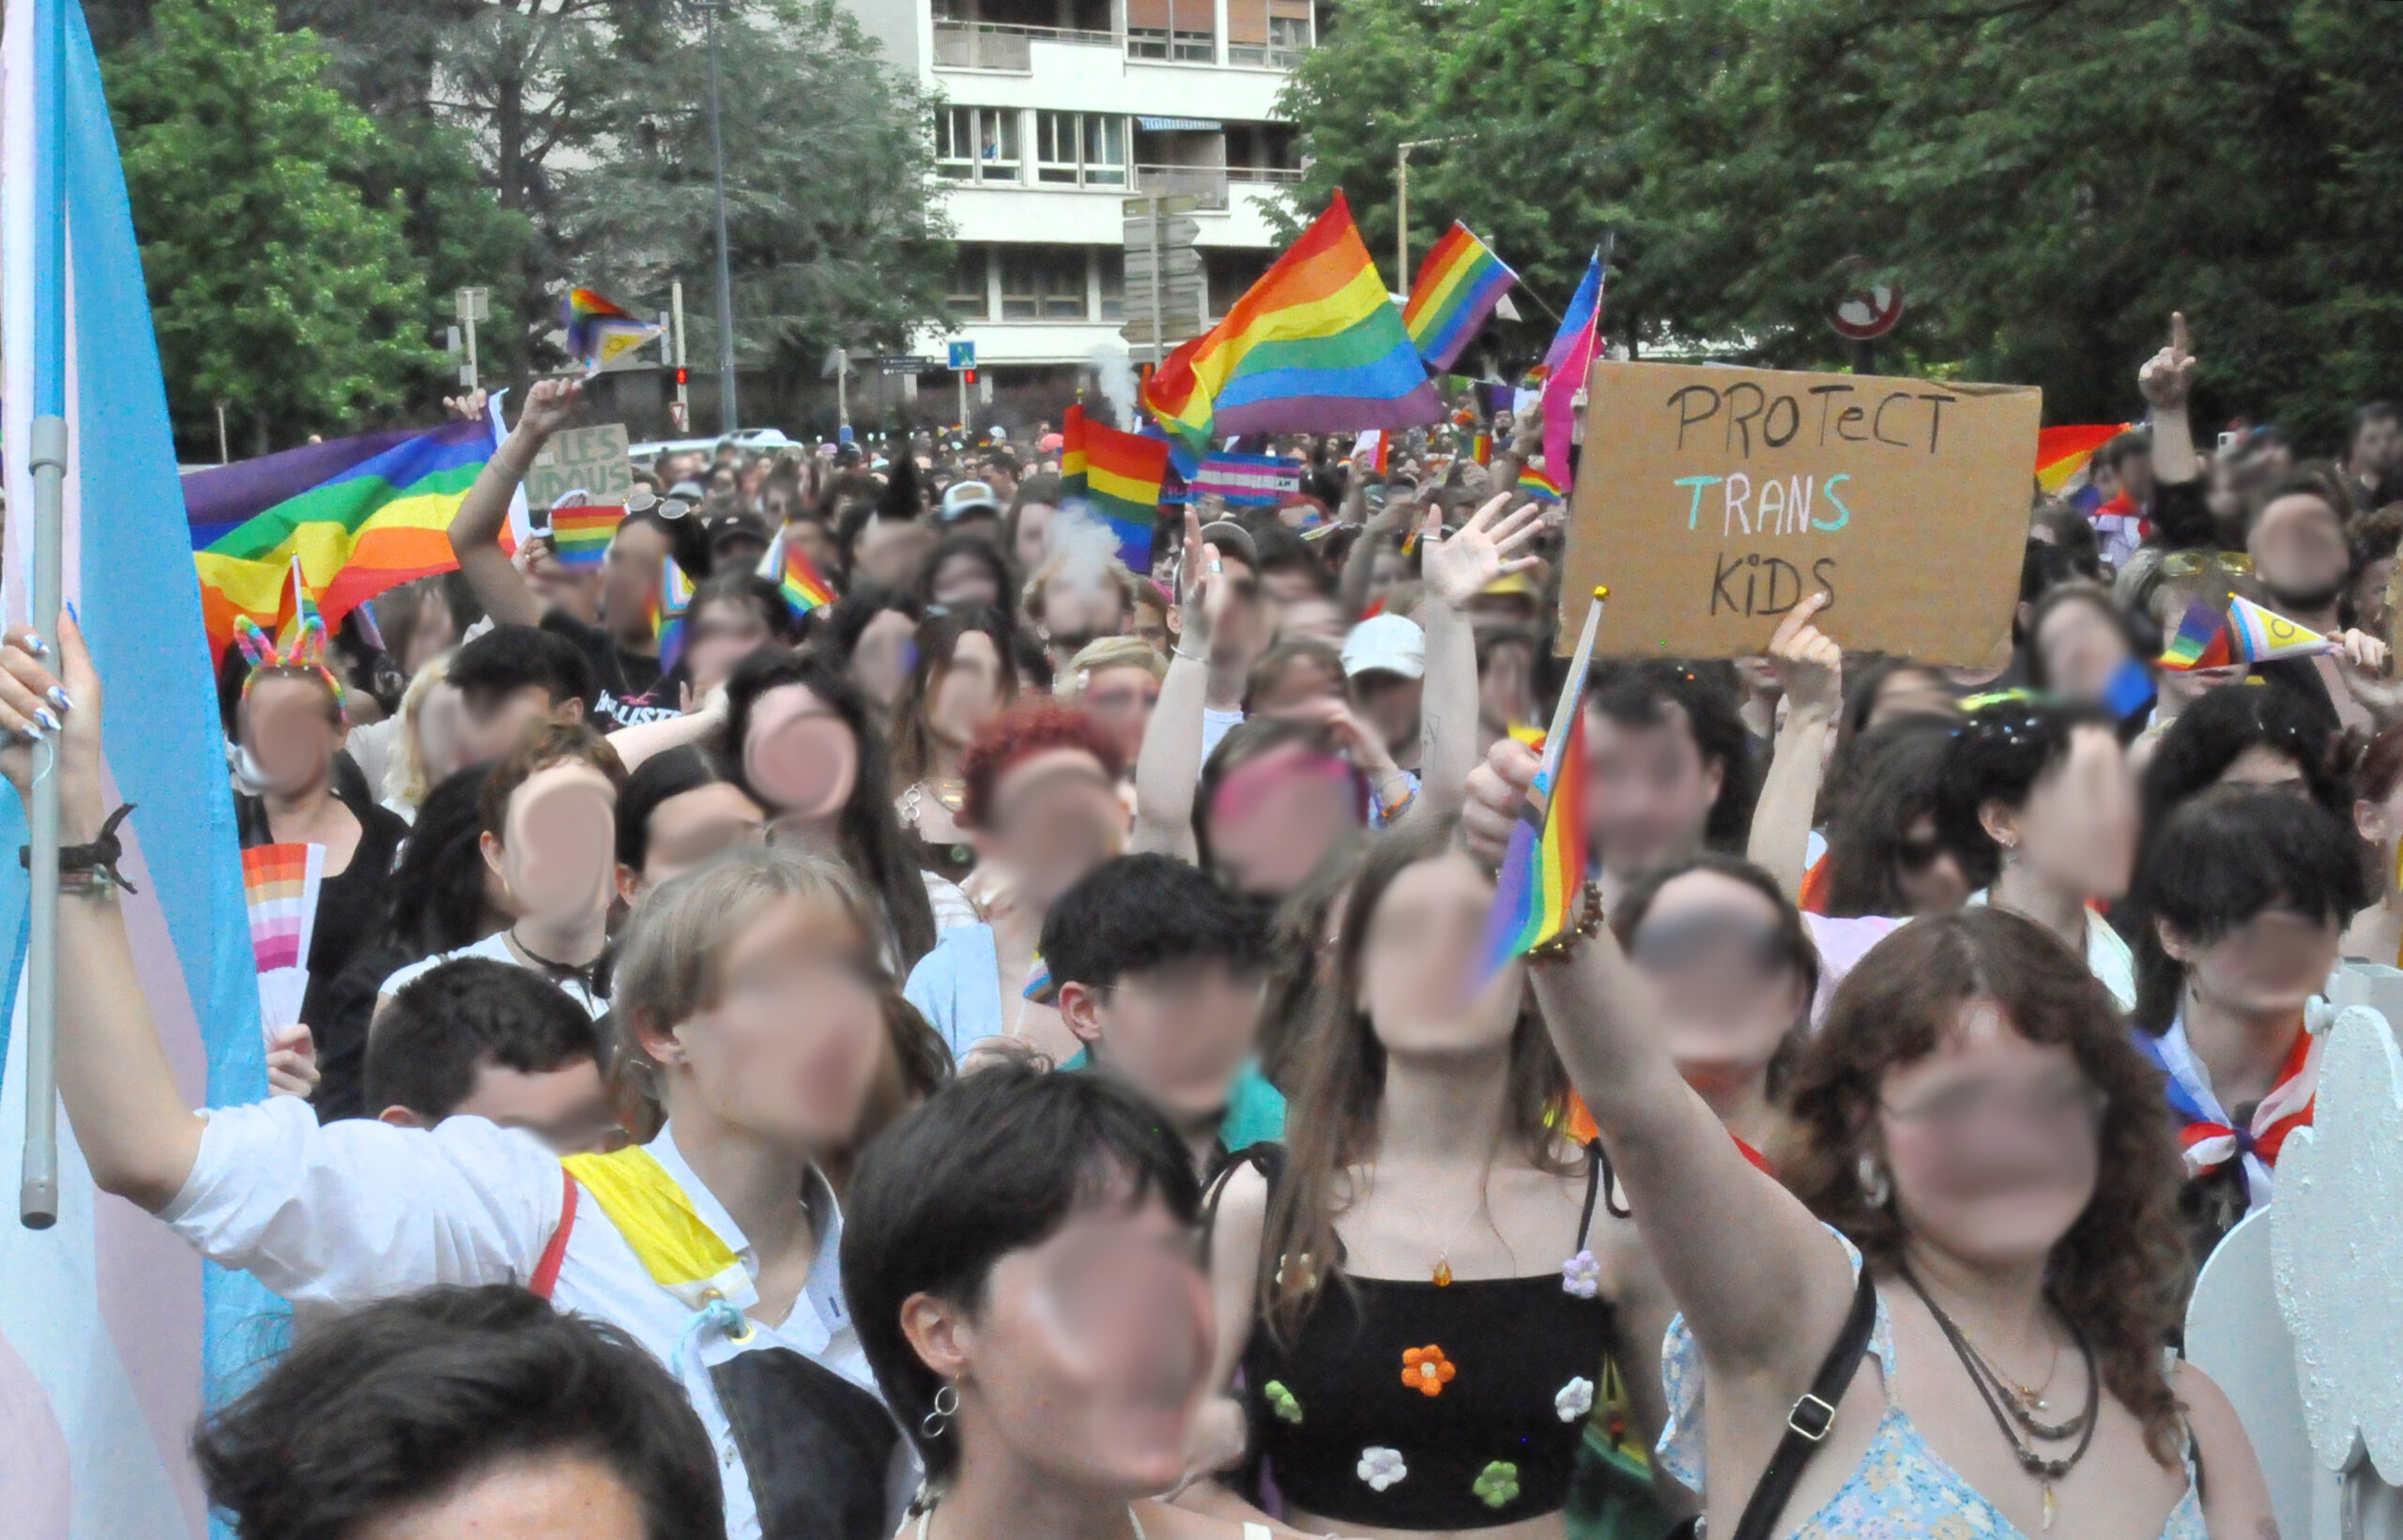 Plusieurs centaines de personnes marchent, drapeaux et pancartes LGBT+ en main. Une pancarte en particulier proclame « protect trans kids » (protégeons les enfants trans).